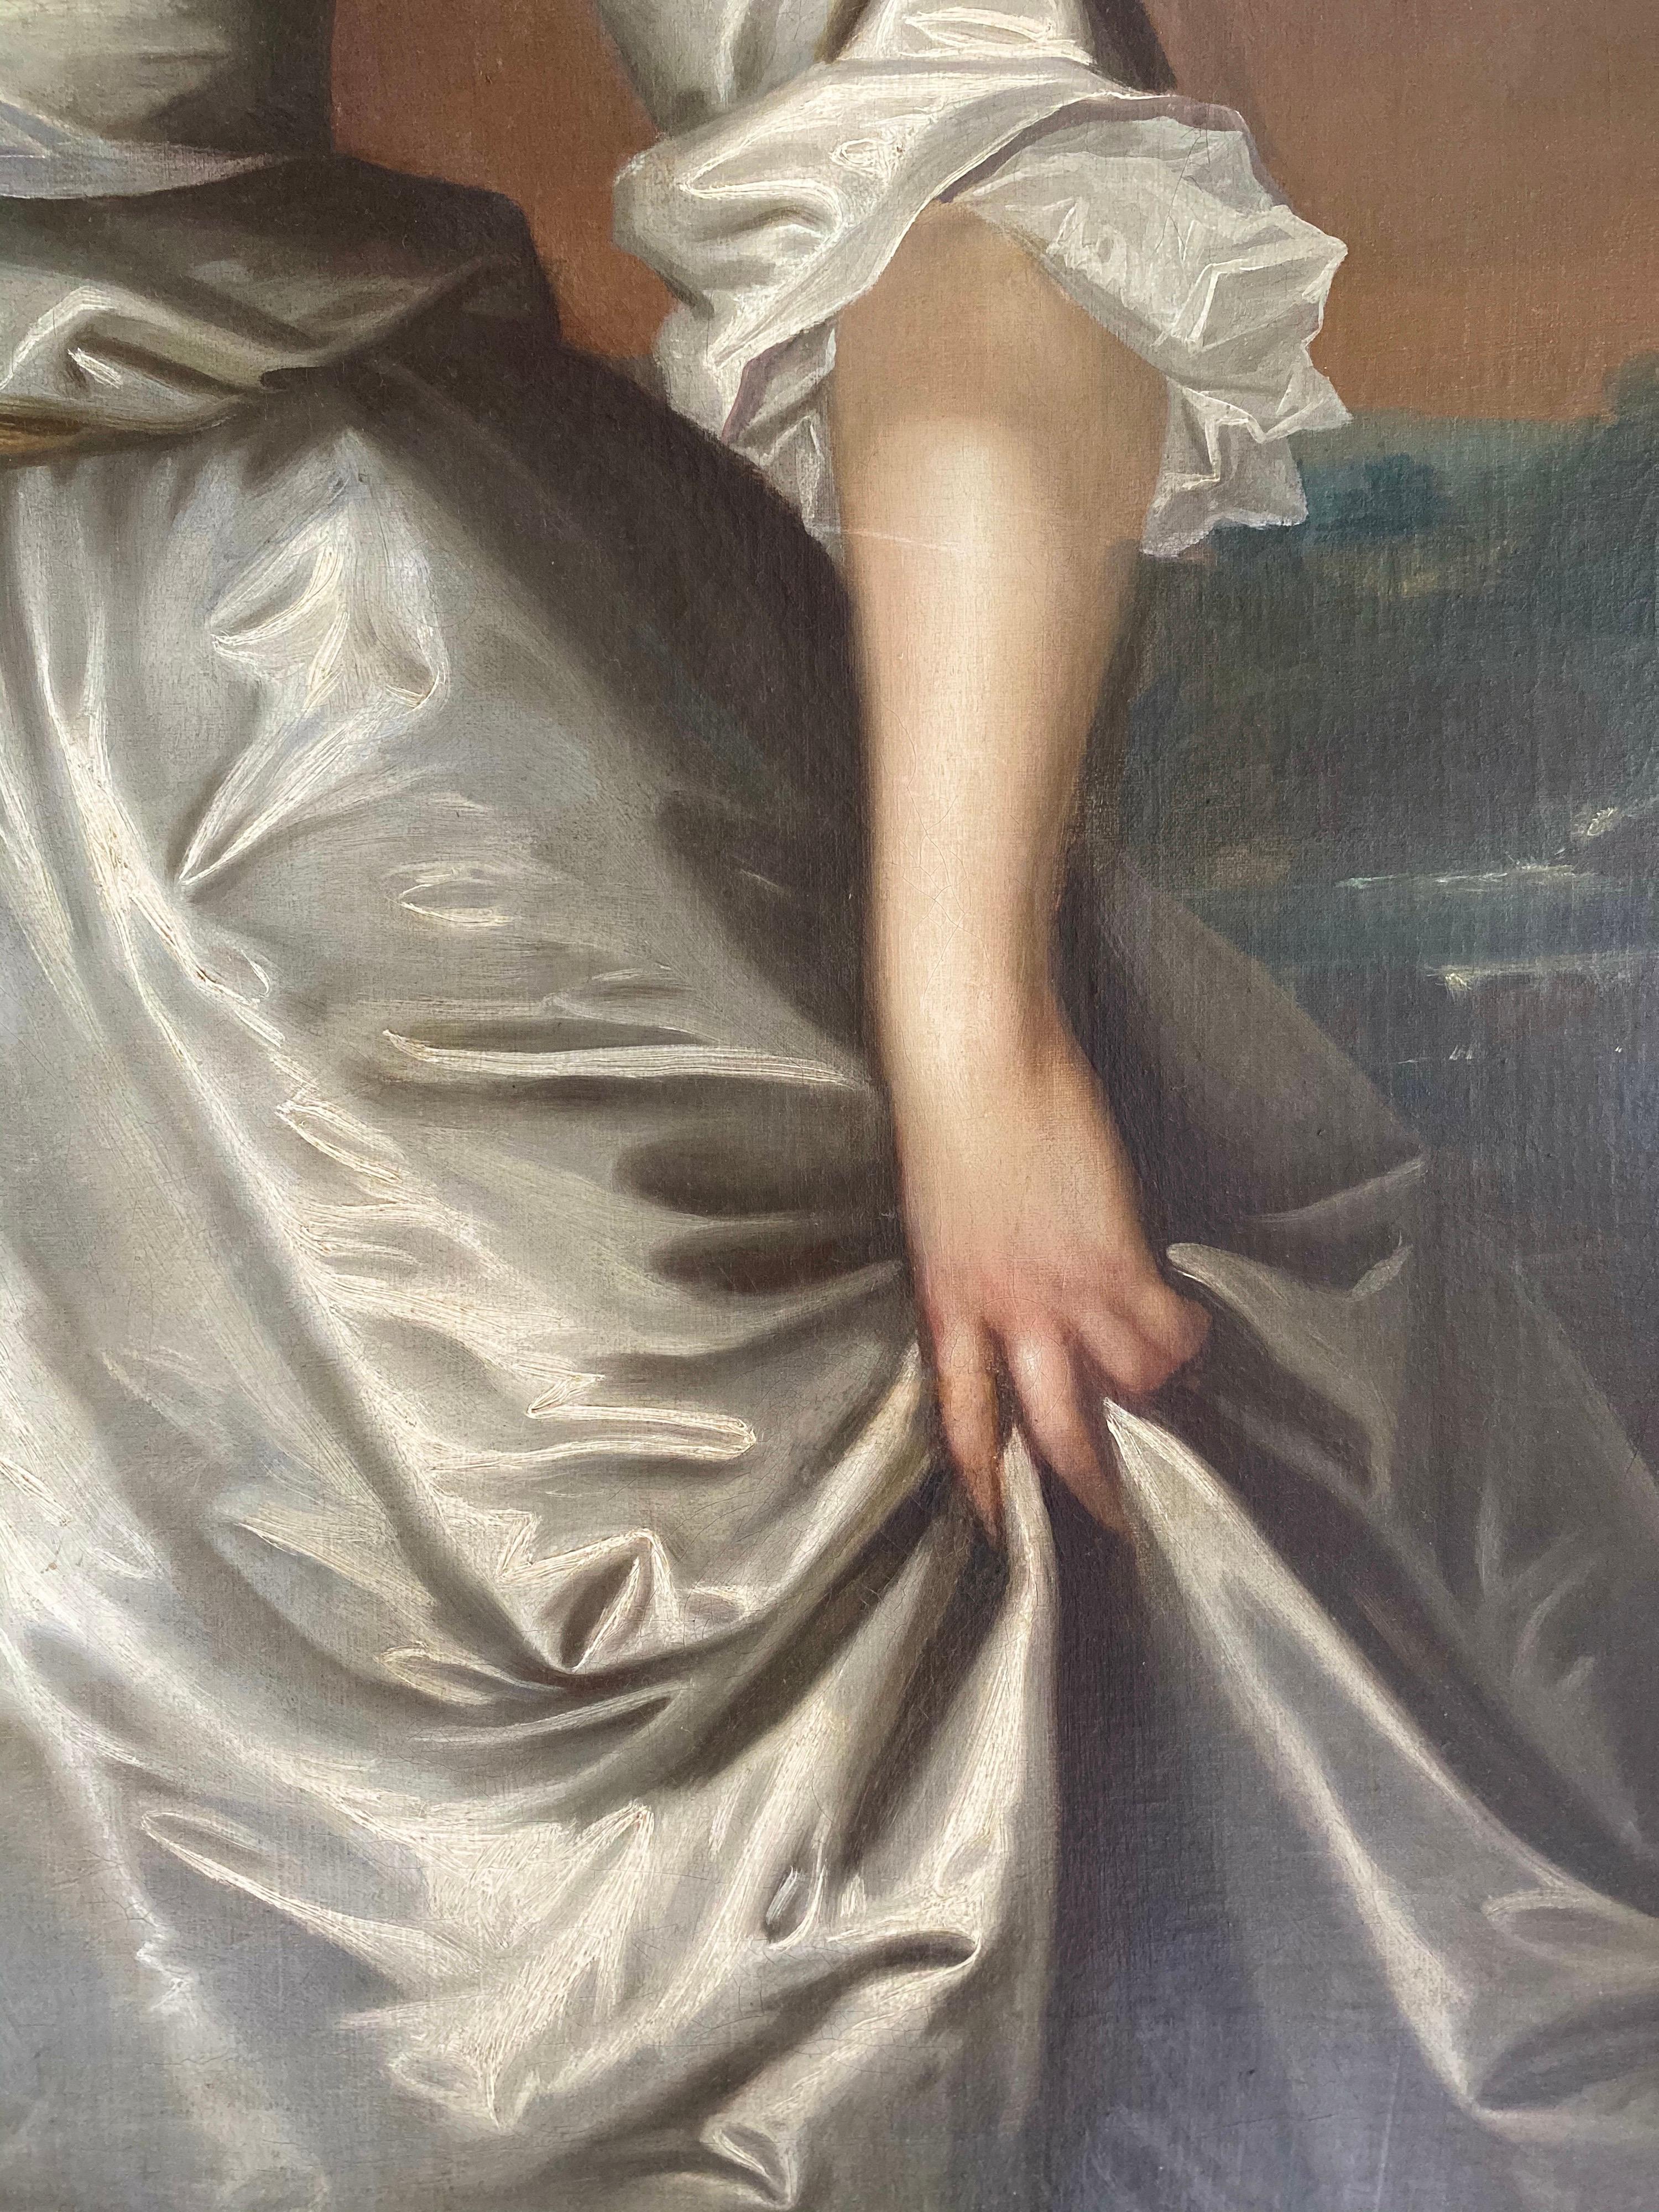 Porträt von Henrietta Pelham-Holles (geb. Godolphin) (1701-1776), Herzogin von Newcastle, in einer bewaldeten Landschaft mit einem Fluss in der Ferne stehend, dreiviertel lang, in einem elfenbeinfarbenen Seidenkleid, einen Blumenzweig in der Hand.